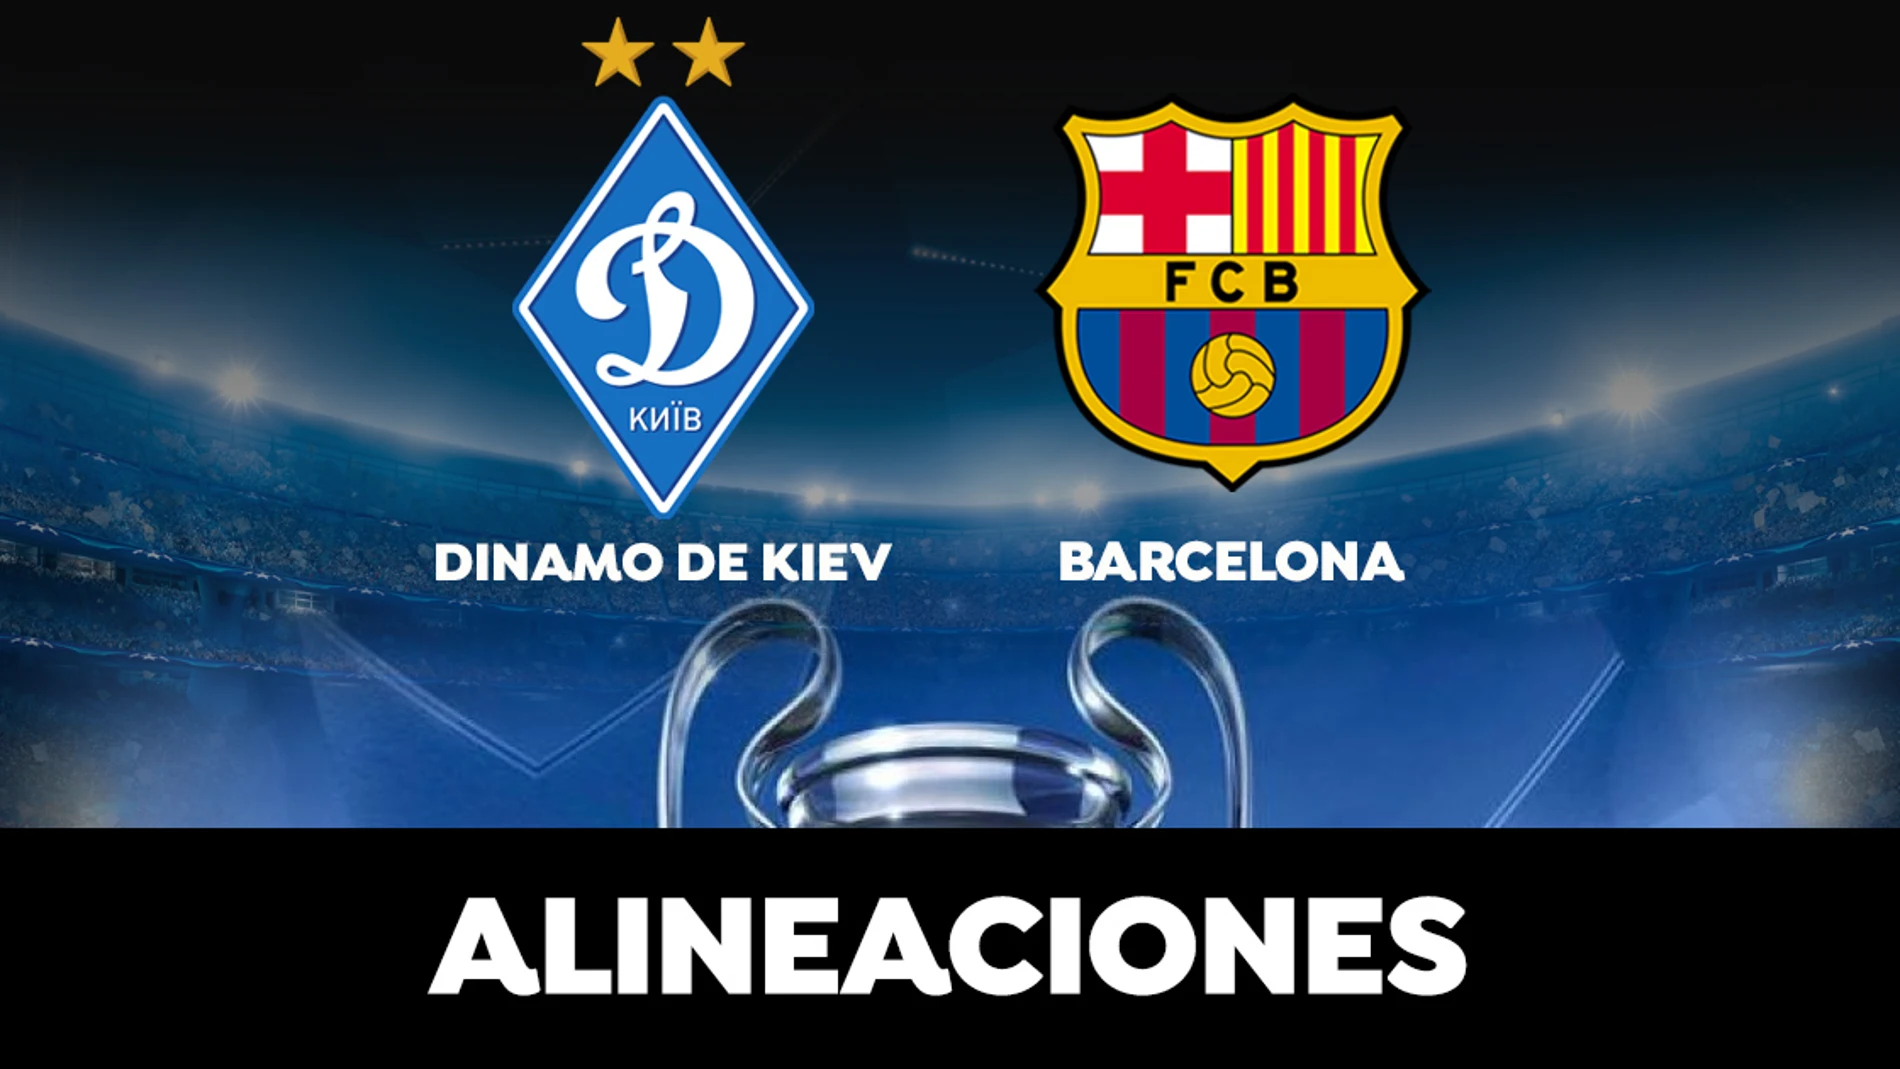 Alineación del Barcelona hoy contra el Dinamo de Kiev en el partido de la Champions League